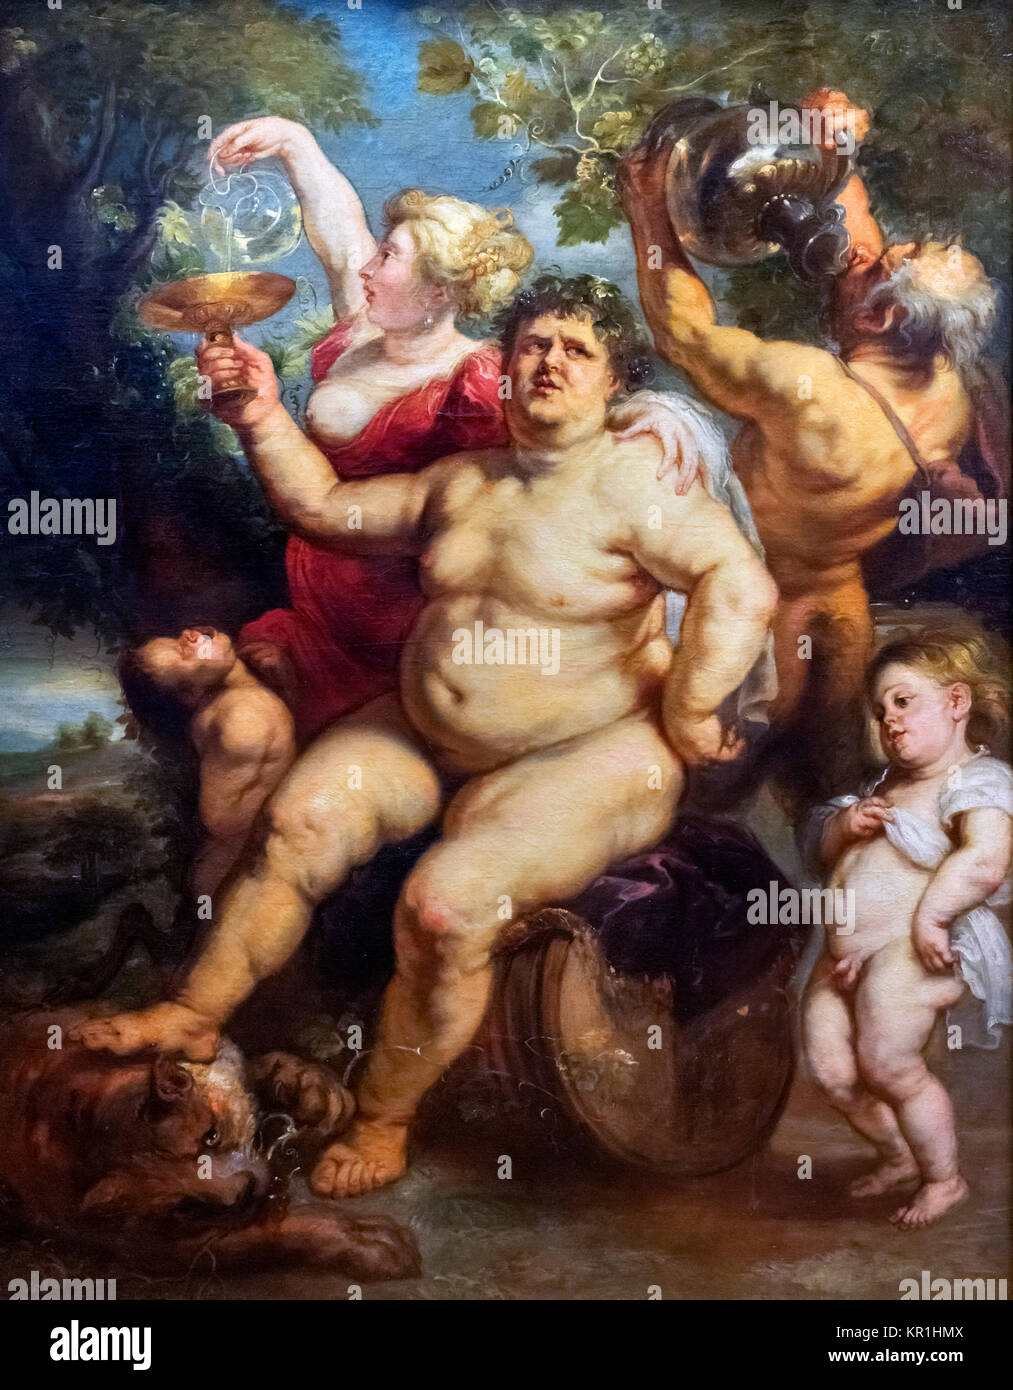 Bacchus. Gemälde Bacchanalia von Peter Paul Rubens (1577-1640), Öl auf Leinwand, um 1635-40. Es zeigt Bacchus (oder Dionysos), den Gott des Weins. Stockfoto